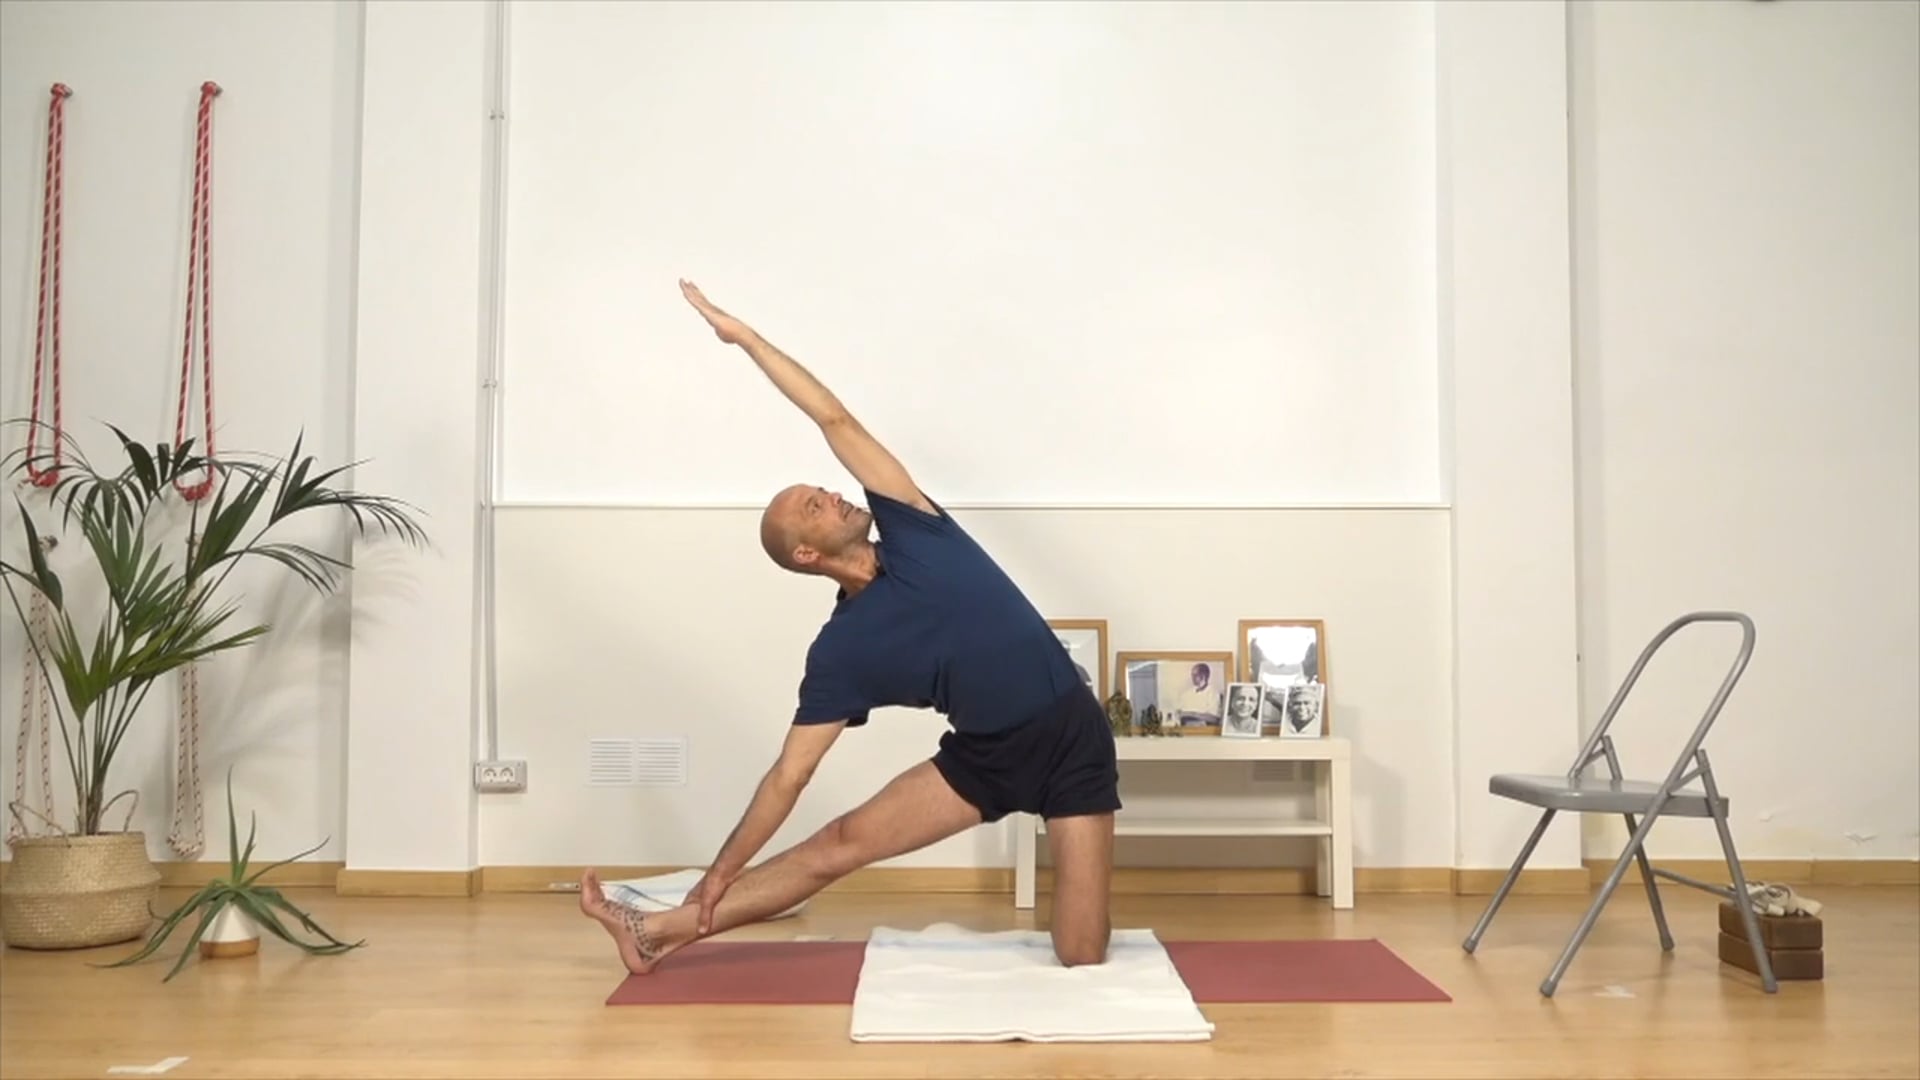 UNA MANERA DIFERENTE Y SANA DE ESTIRAR LOS ADUCTORES | Principiante | Iyengar Yoga | 51 min.